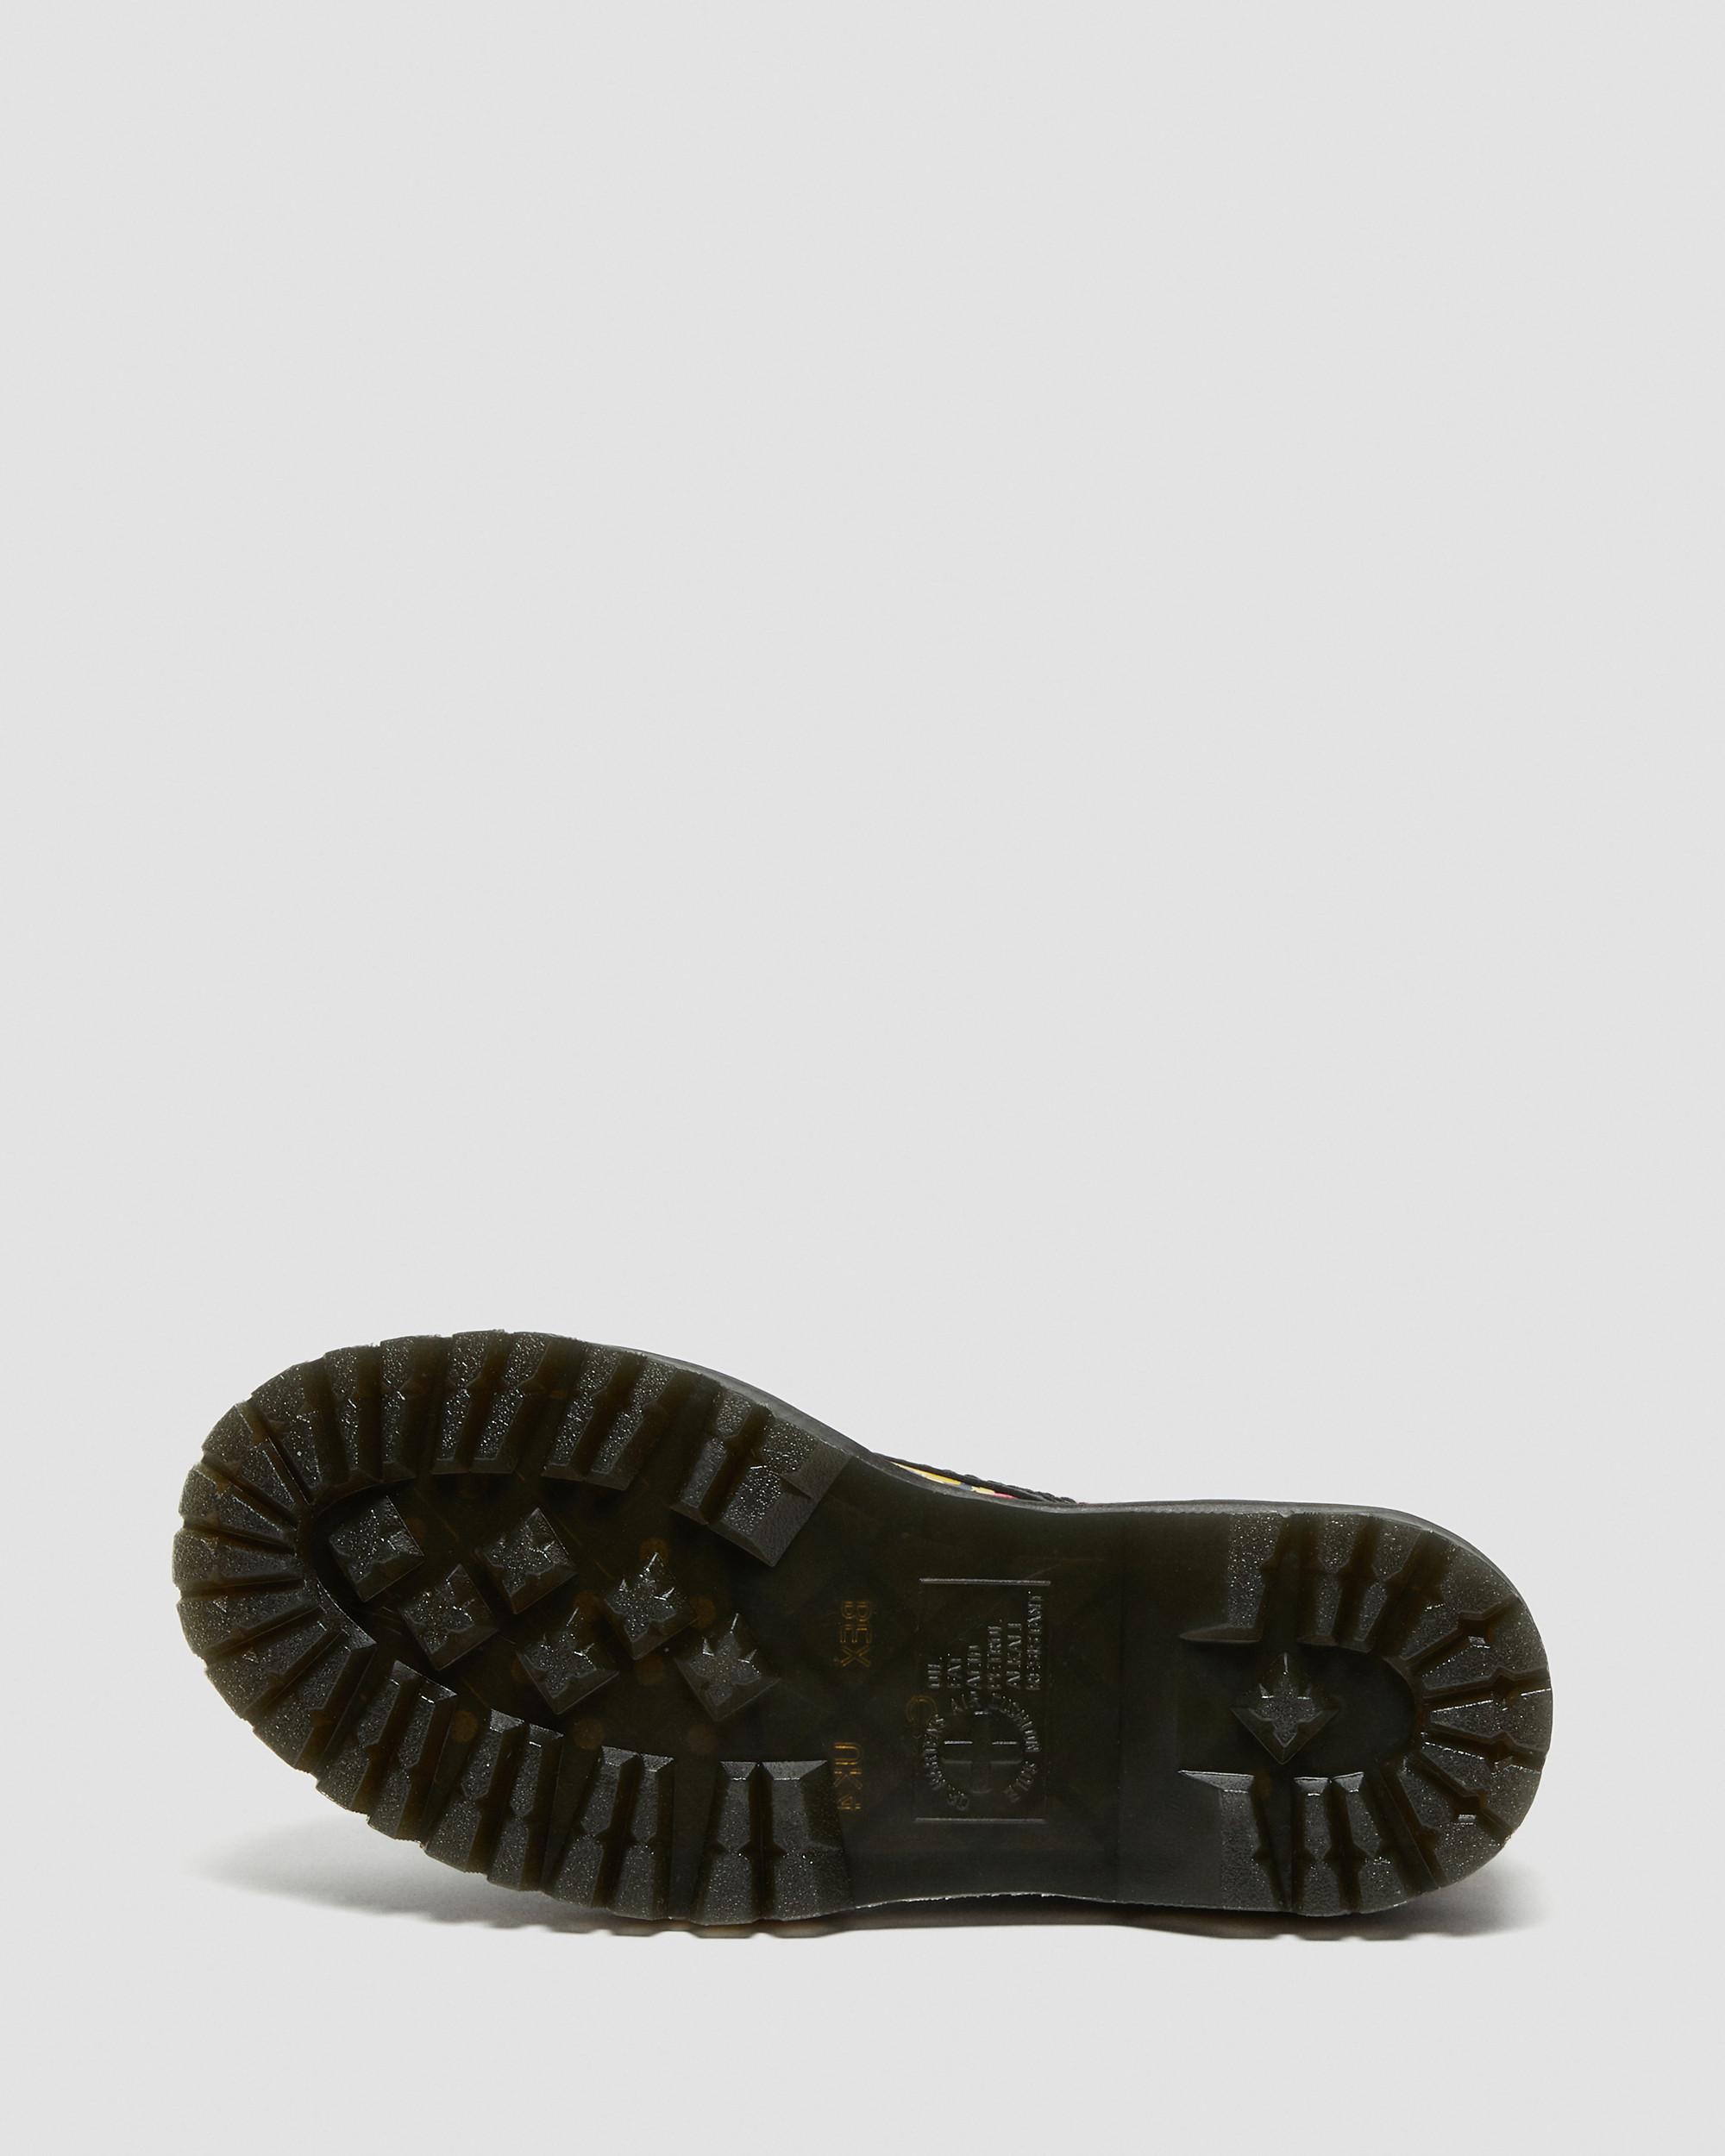 | Floral Martens Sinclair Up Black in Mash Dr. Platform Leather Boots